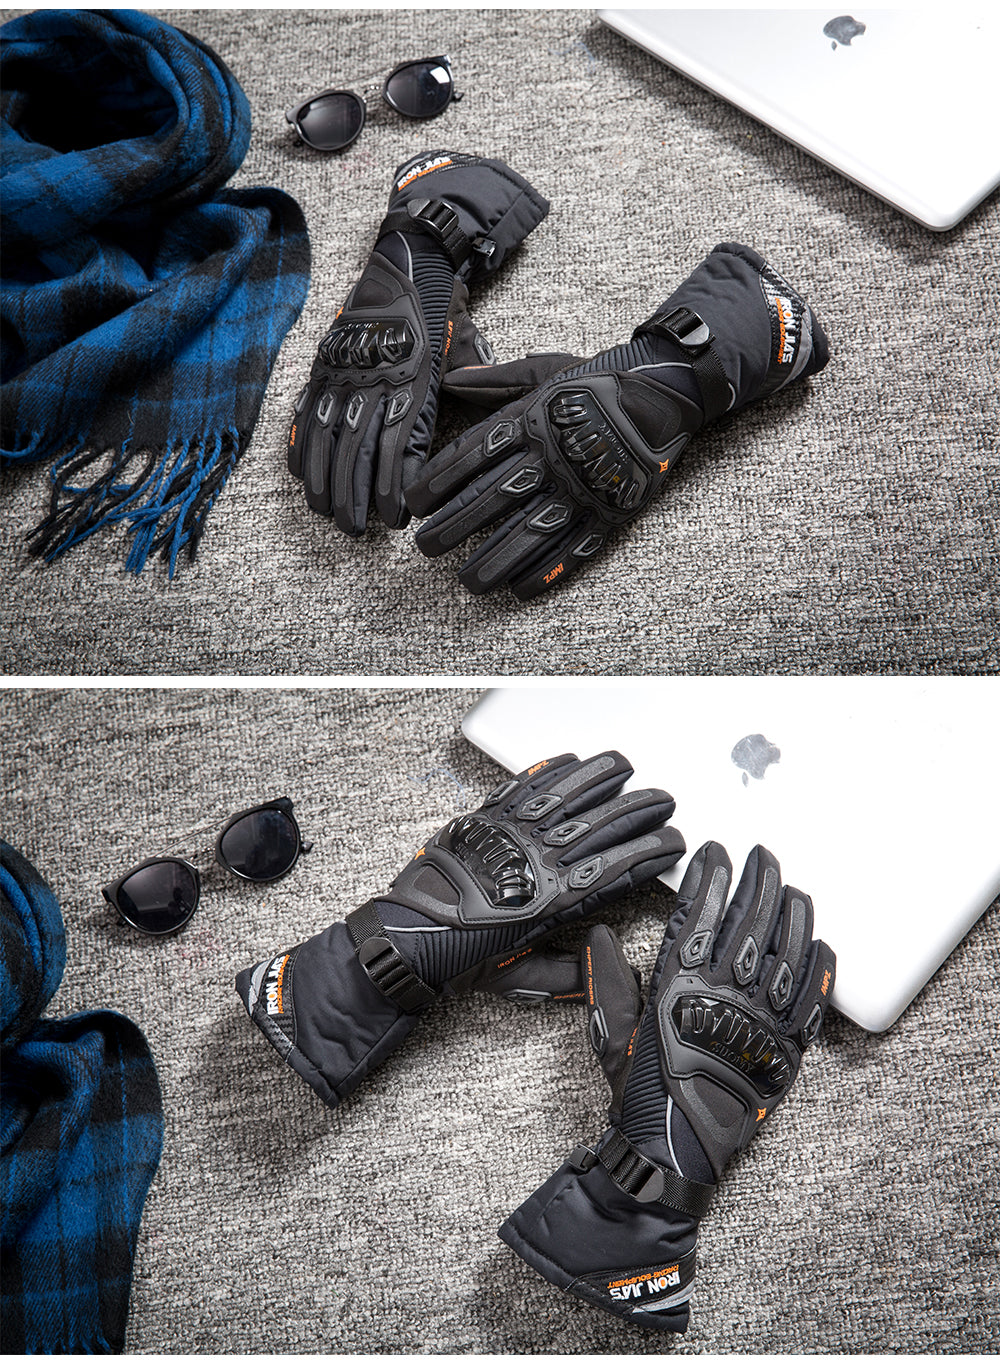 IRON JIA'S gants de Moto pour hommes, gants de Moto imperméables